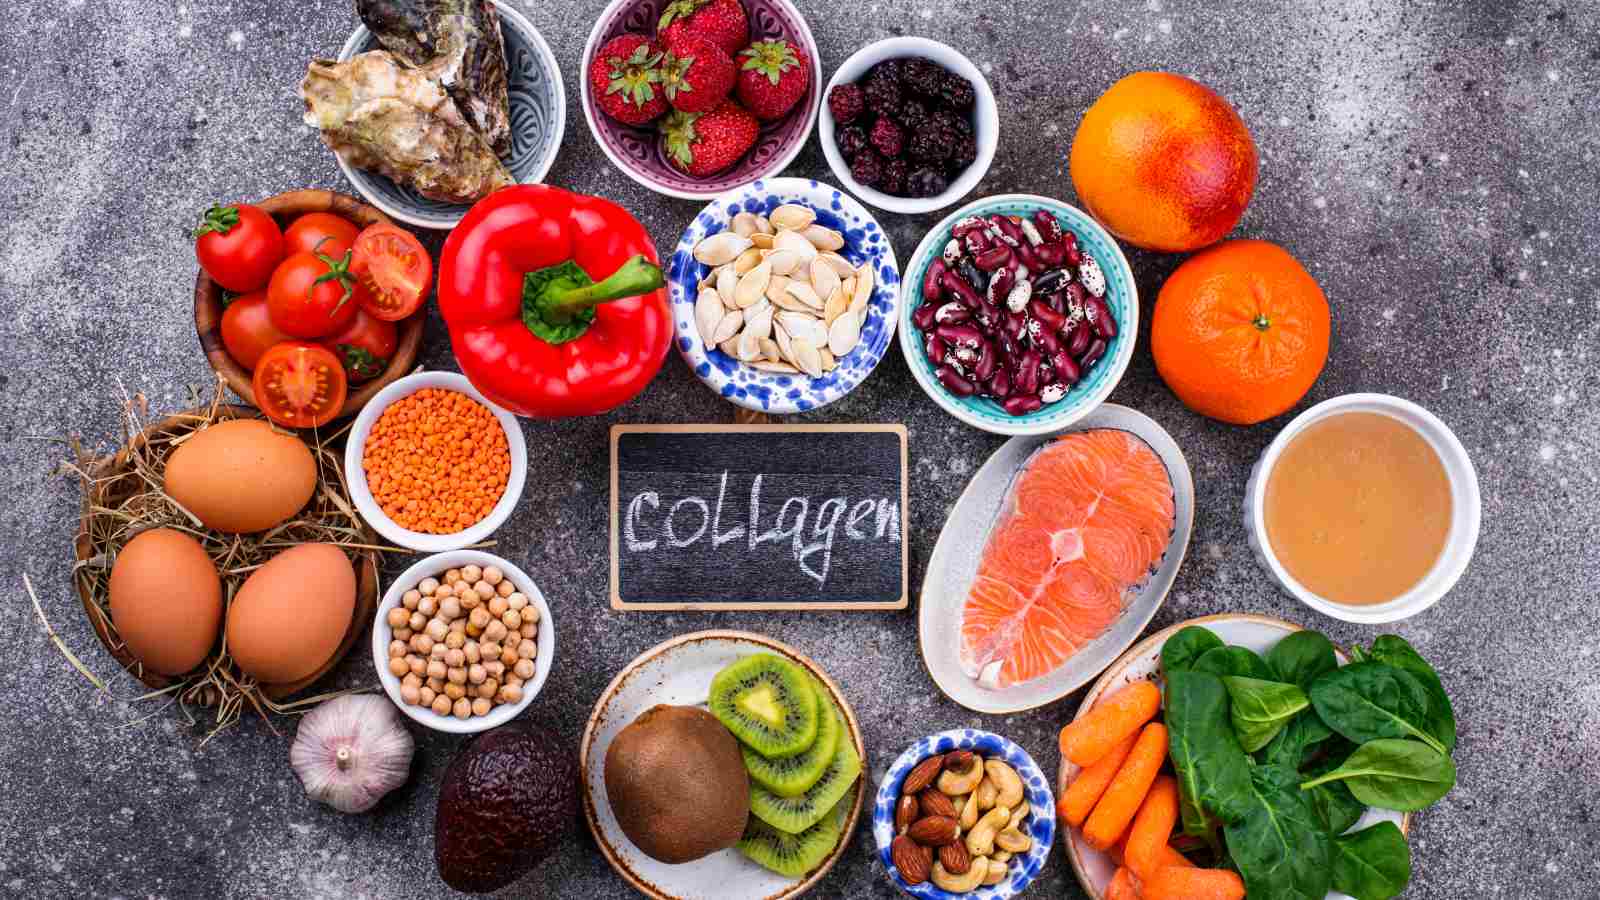 Tăng cường Collagen bằng thực phẩm hàng ngày